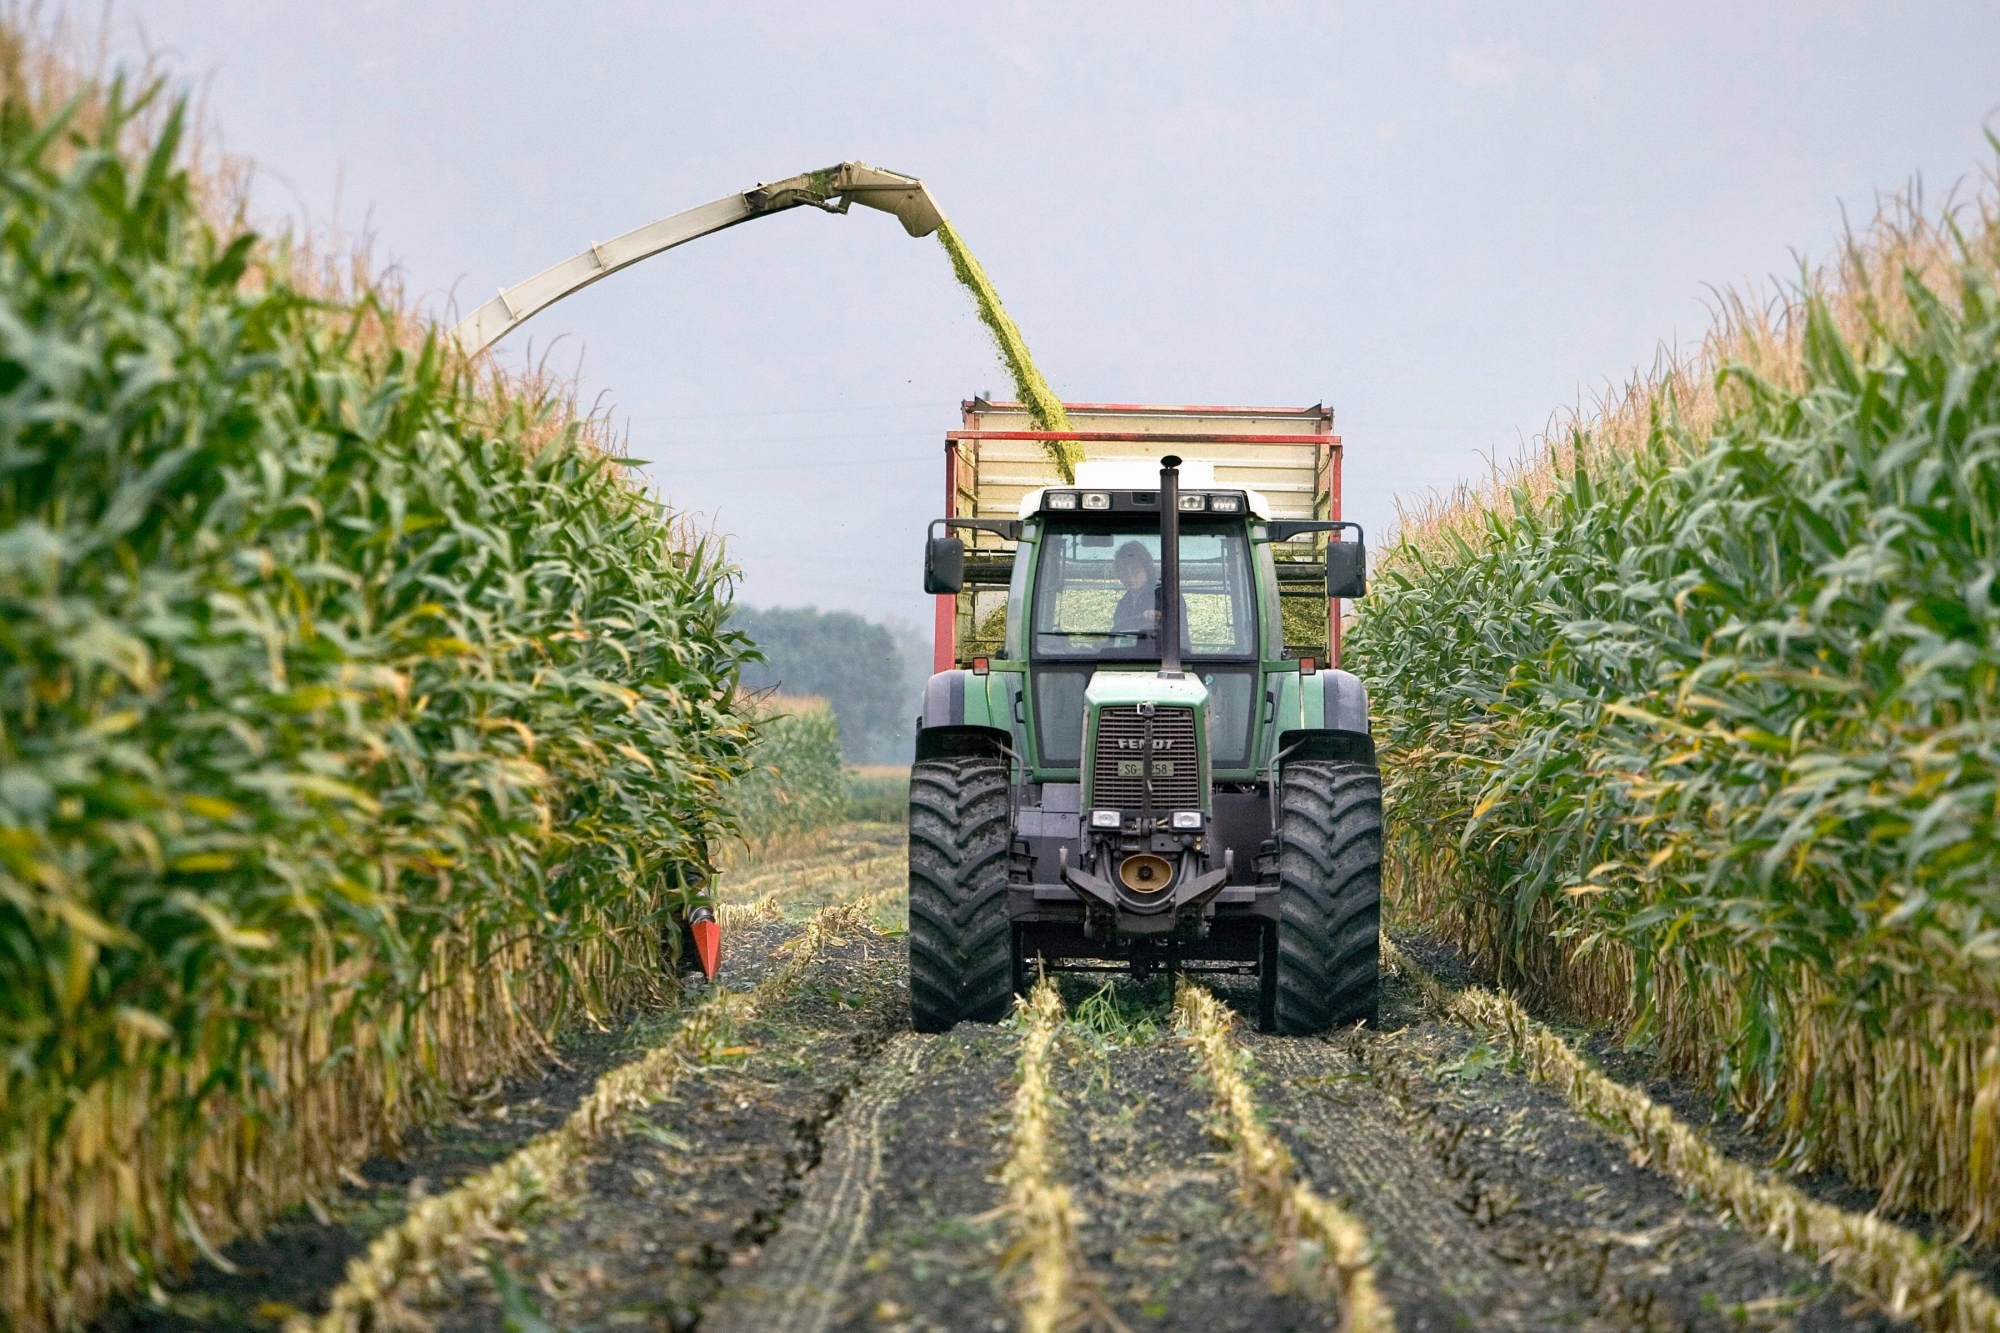 Interdire les pesticides de synthèse limiterait trop la marge de manœuvre de l'agriculture.